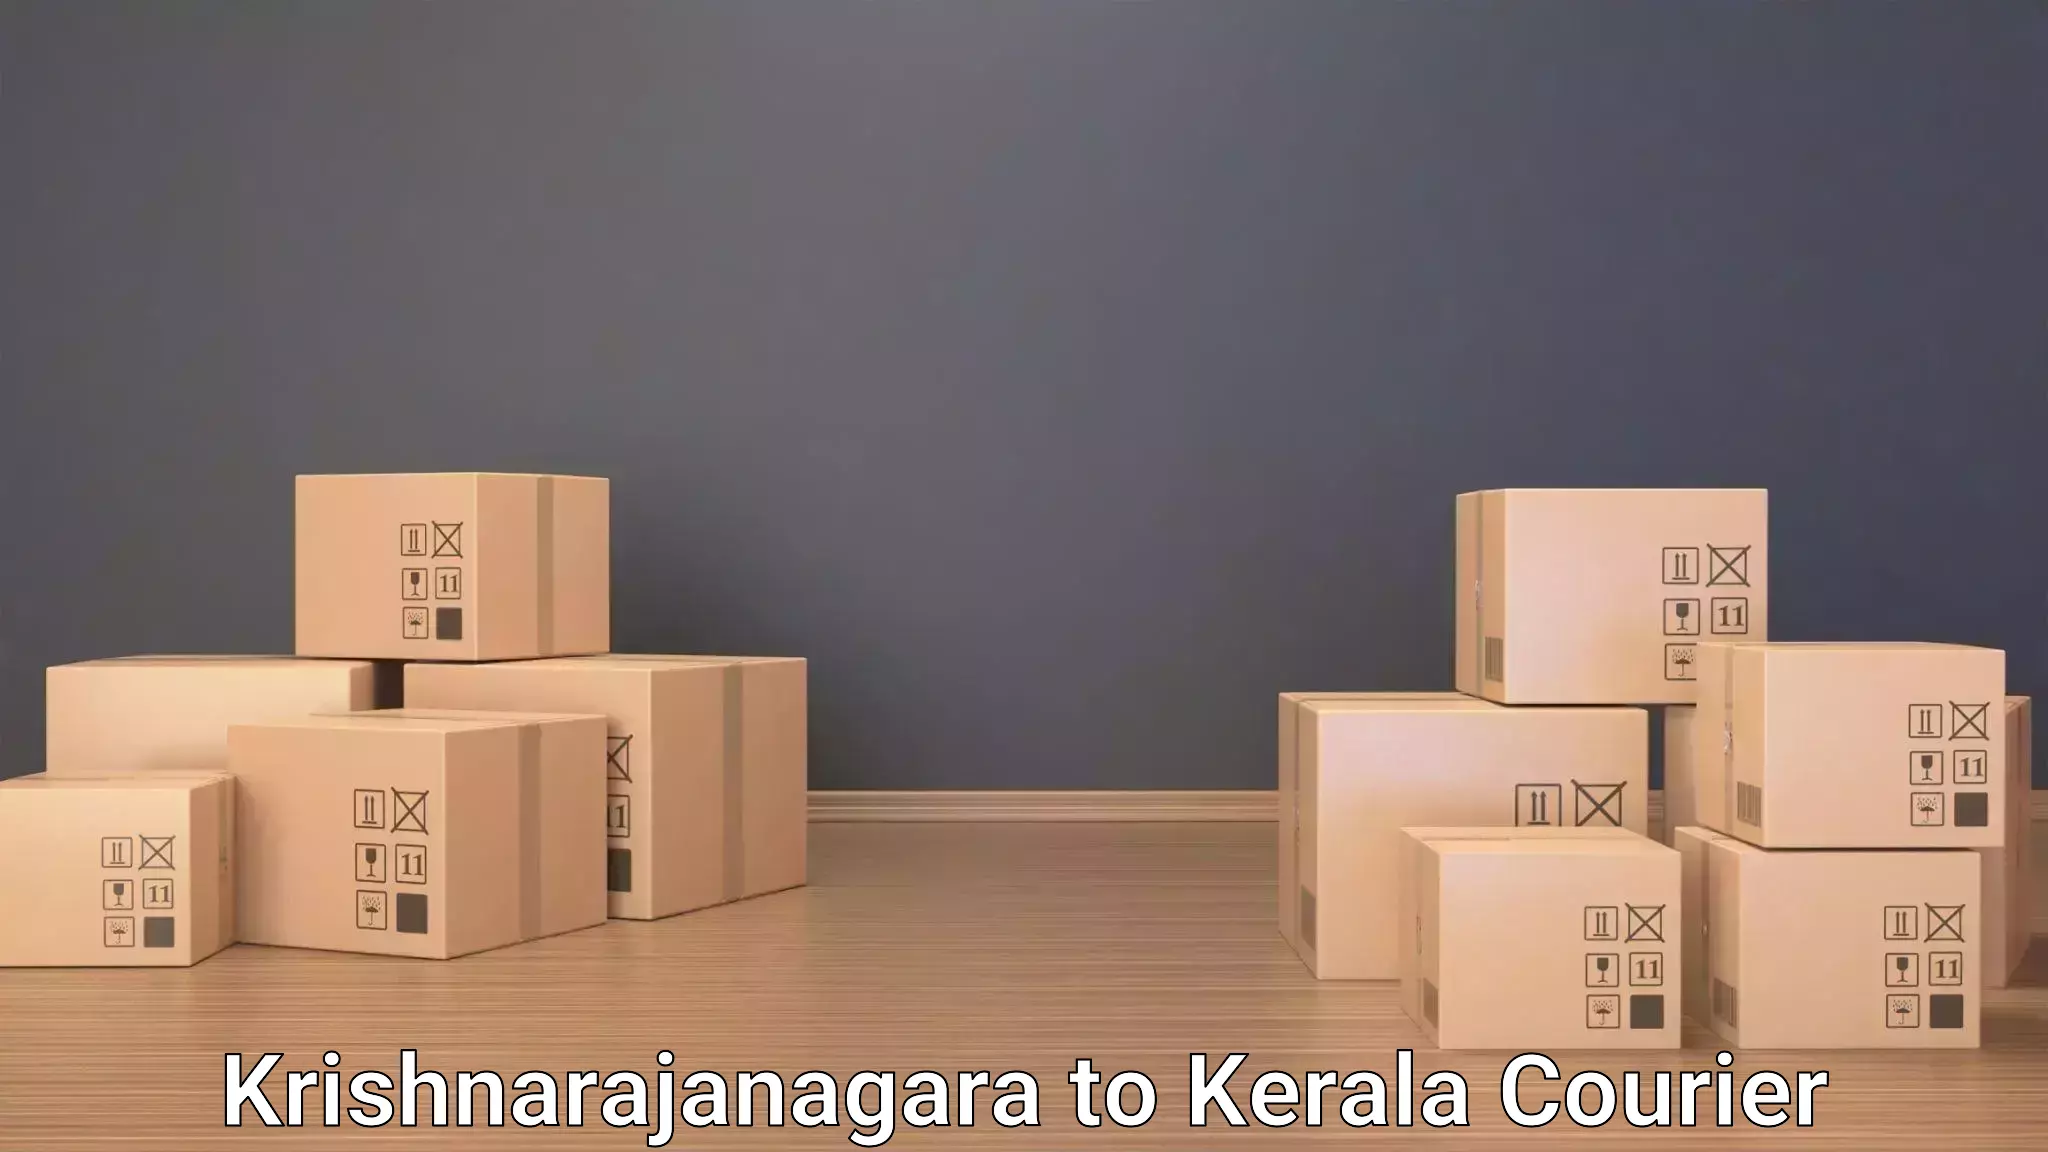 Baggage courier calculator in Krishnarajanagara to IIIT Kottayam